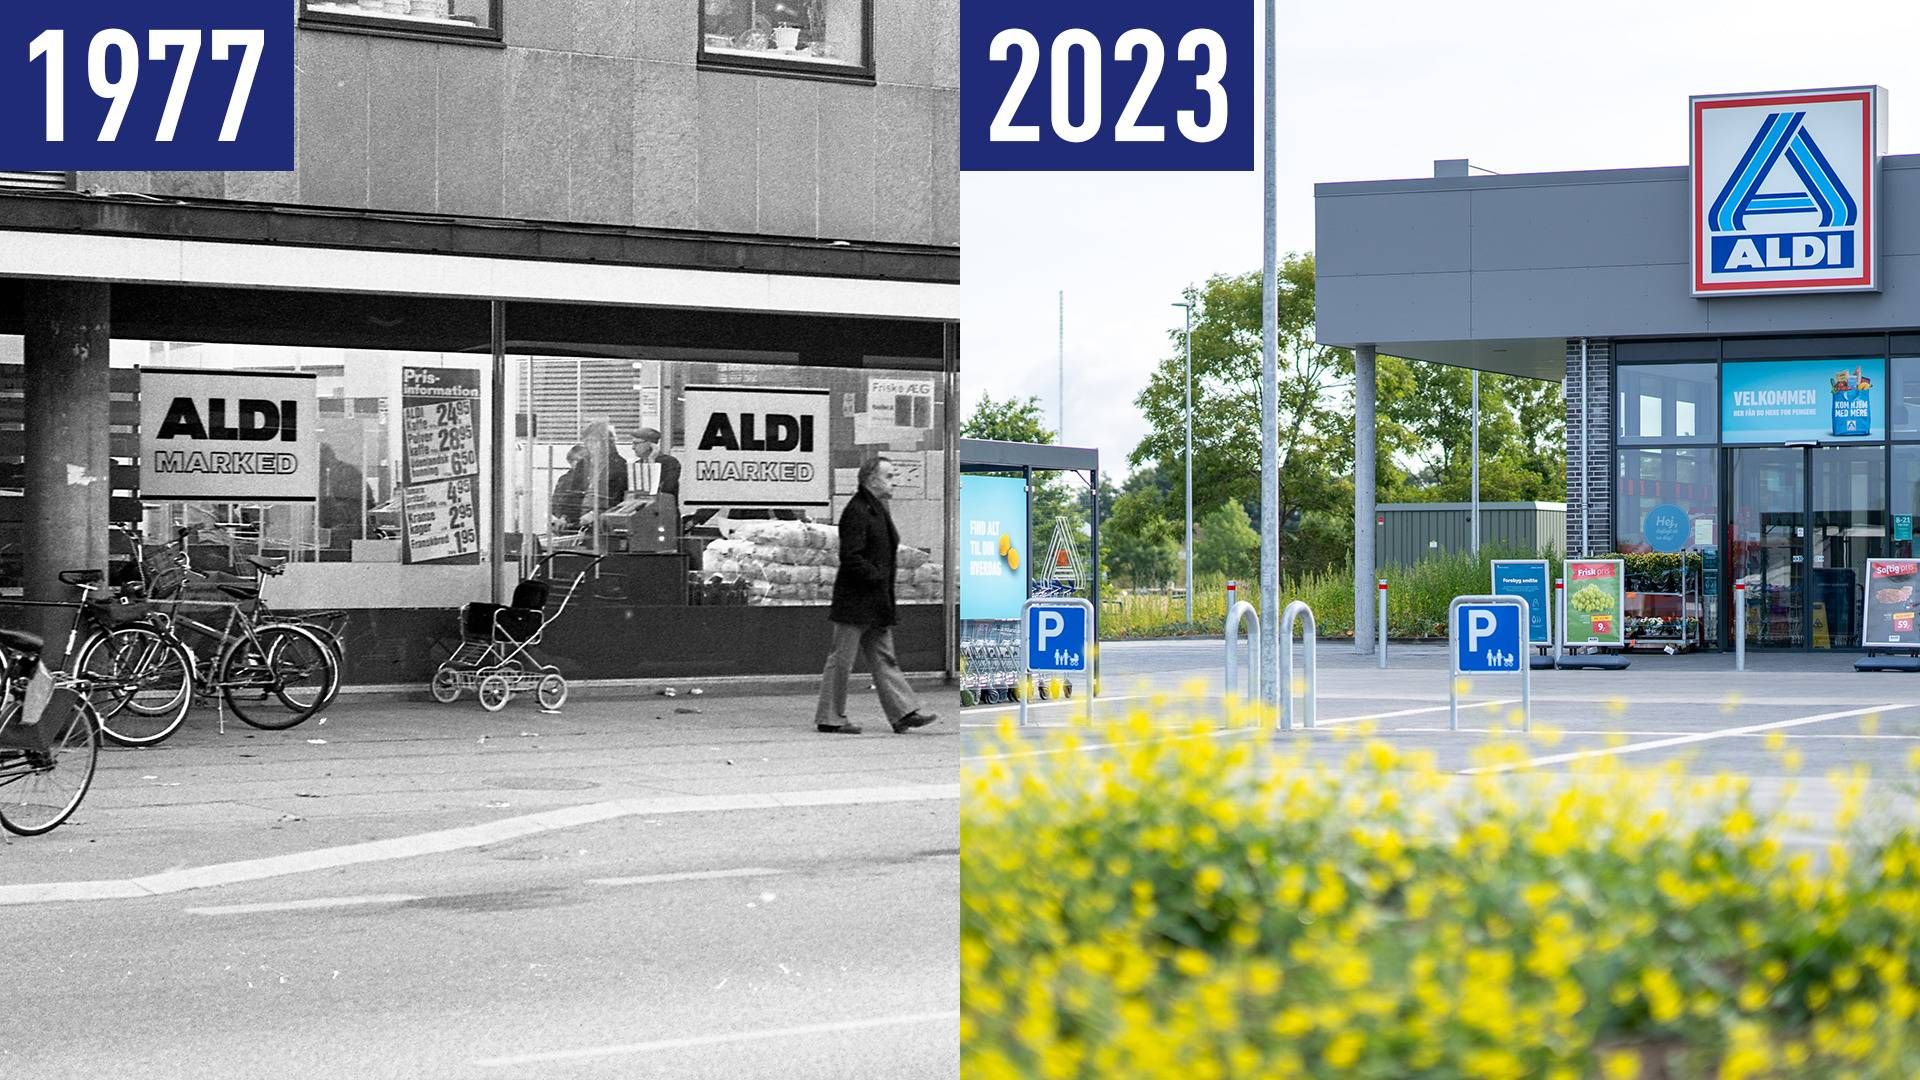 Aldis første danske butik blev etableret i 1977. Den sidste Aldi-butik i Danmark lukker i dag, den 30. november 2023. | Foto: Ole Rash, Kroppedal Museum(t.v.) og Pr (t.h.)